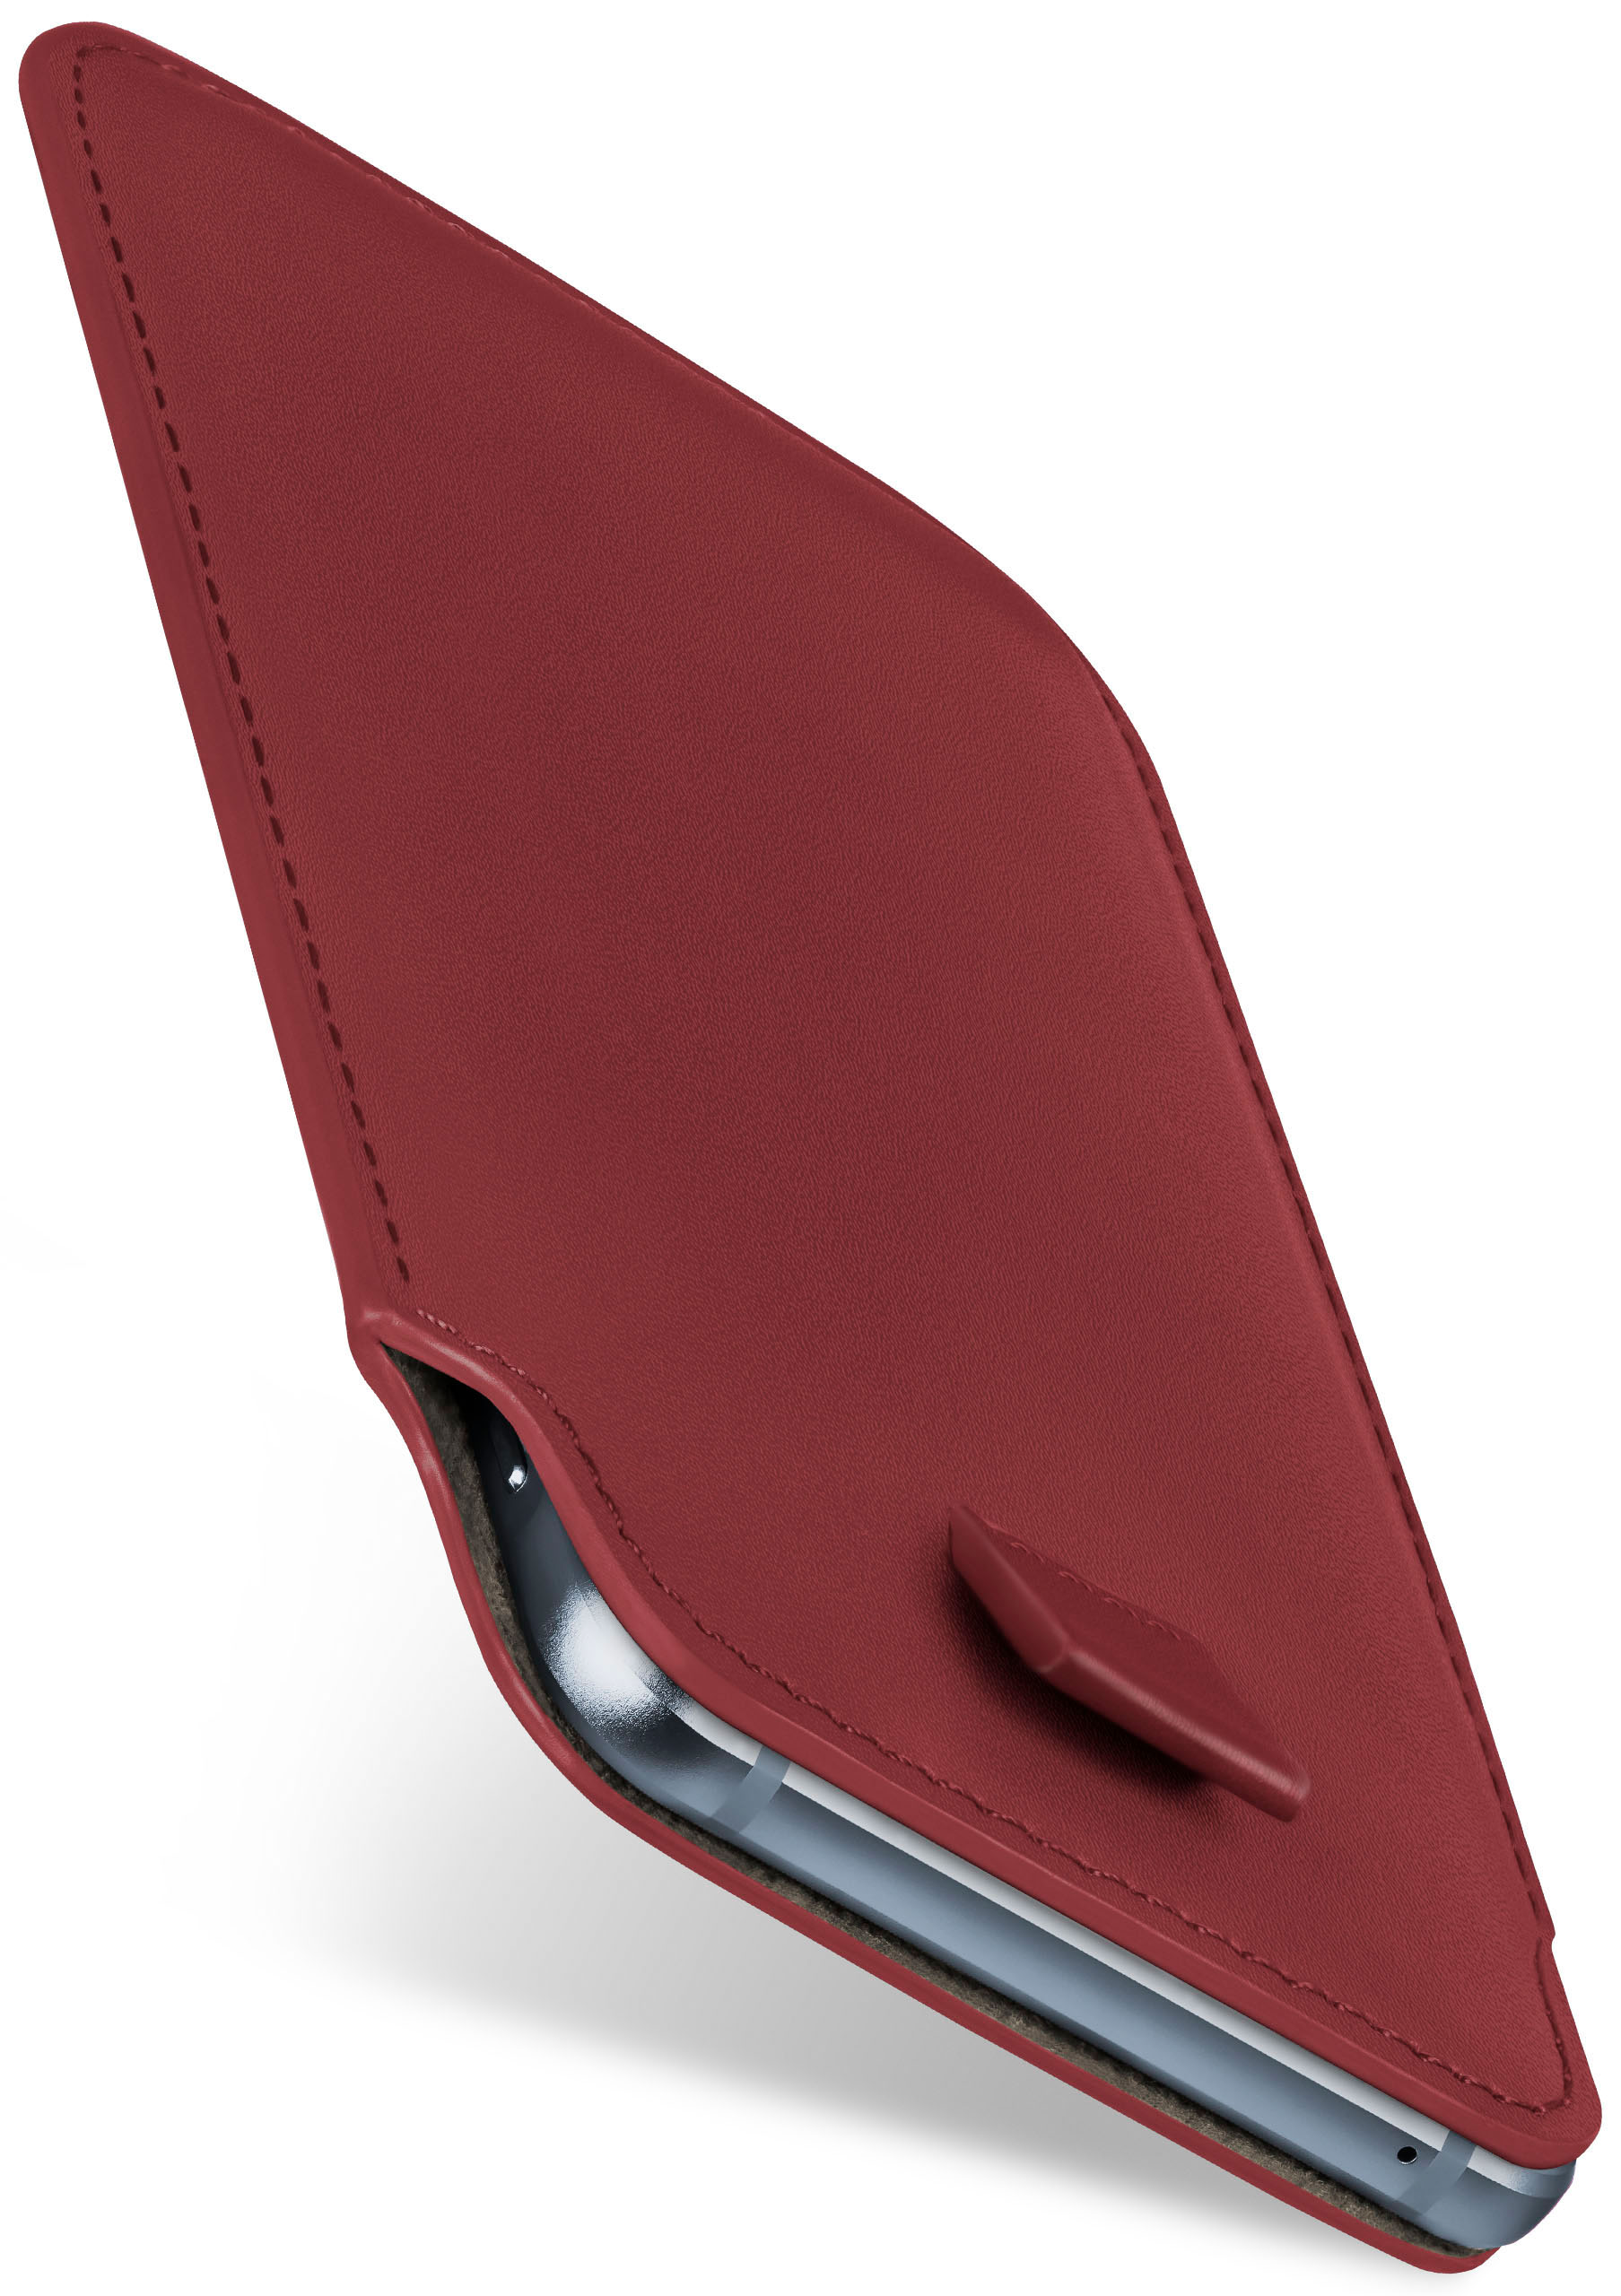 MOEX Slide Case, Full K10 (2017), Maroon-Red Cover, LG